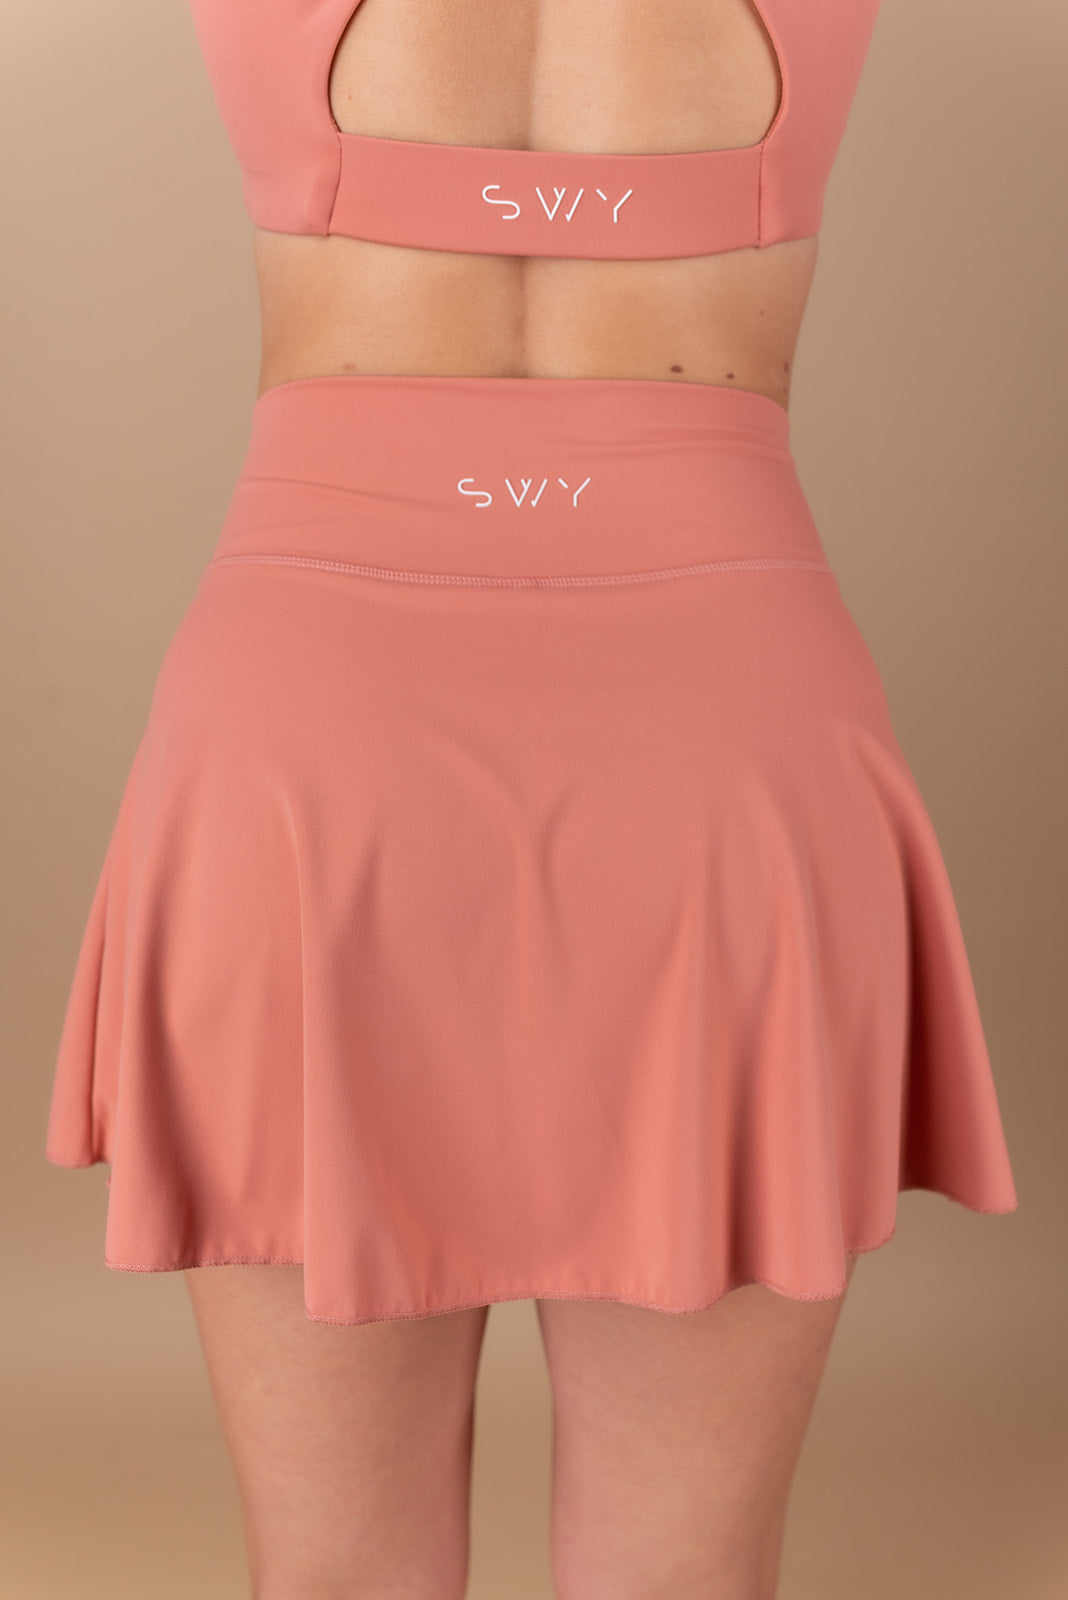 SoftLux Skirt